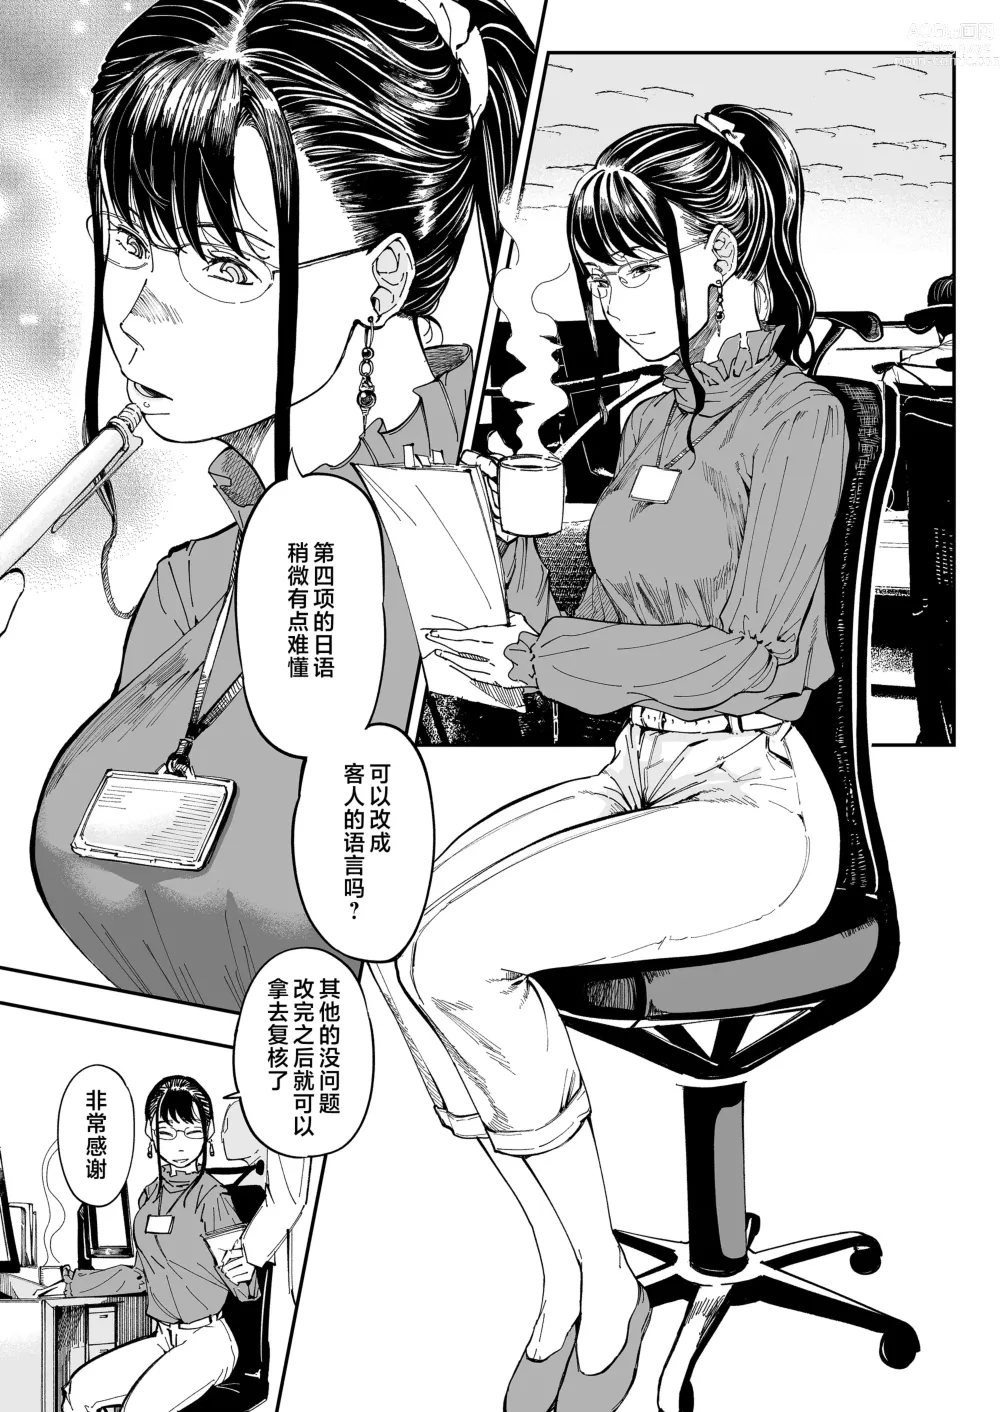 Page 2 of doujinshi 找到了姐姐的福利小号